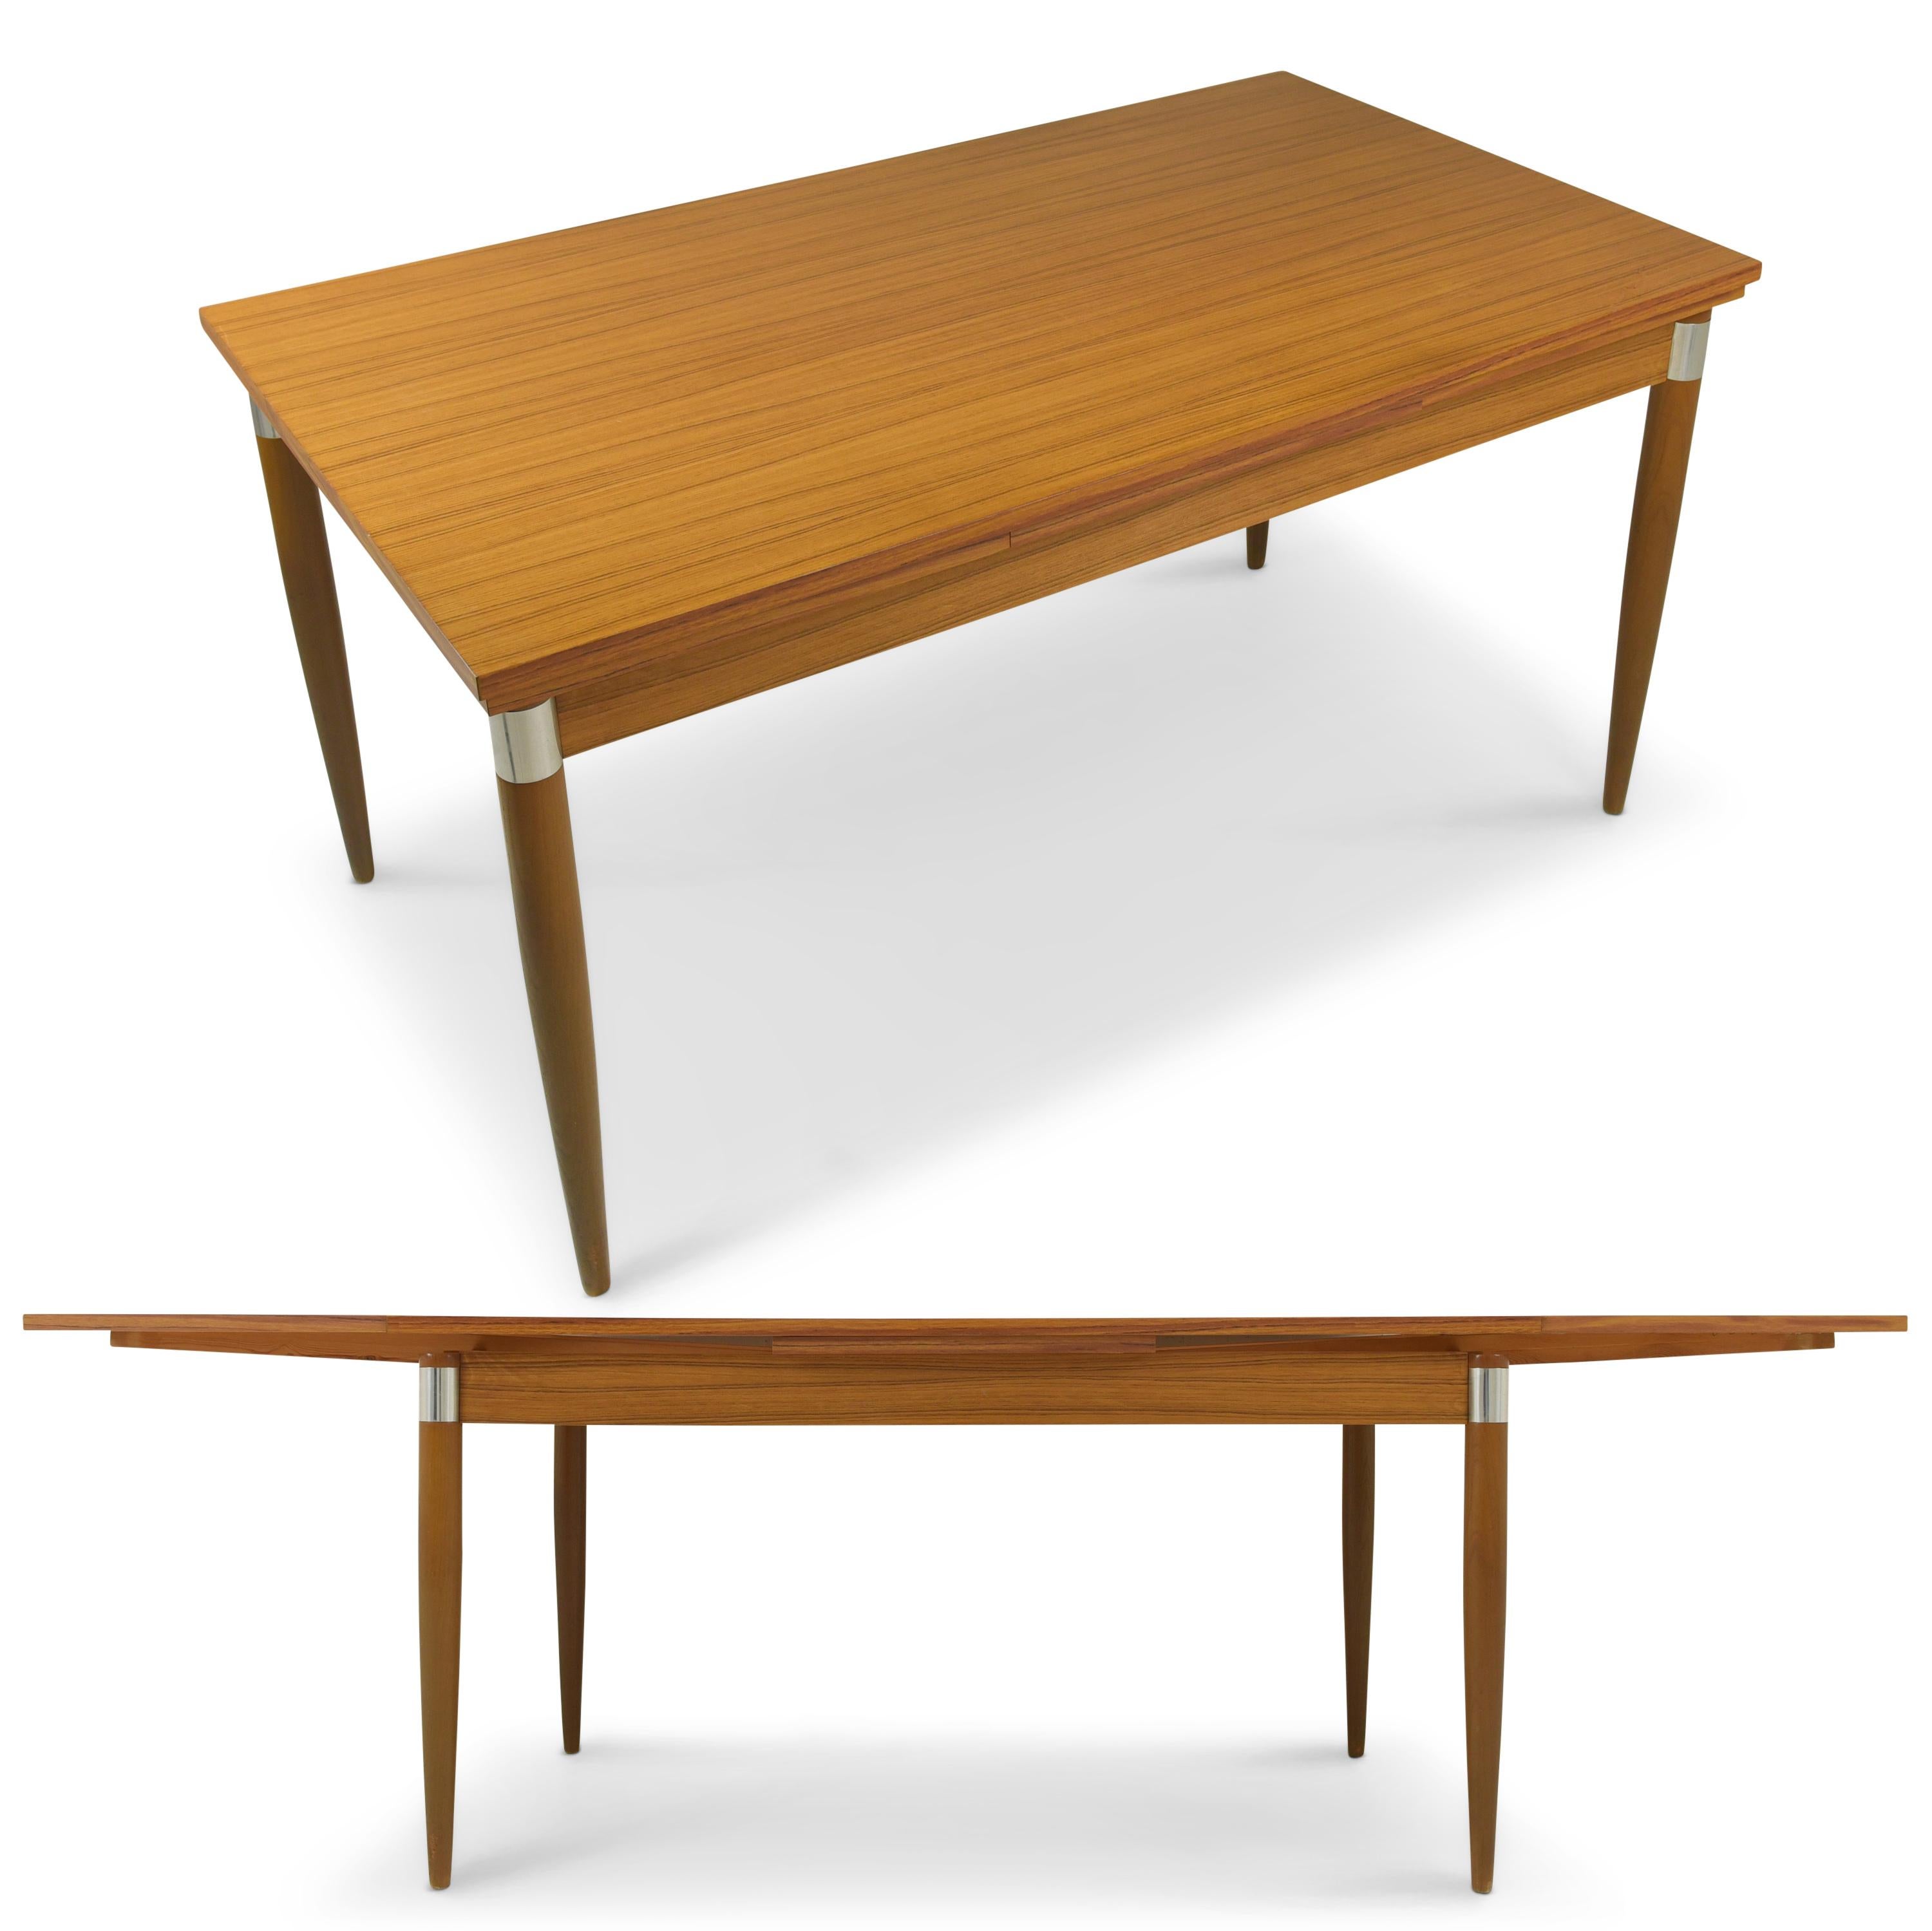 Ausziehbarer Esstisch mit 6 Stühlen restaurierte 70er Jahre Vintage Sitzgruppe

Merkmale:
Tischplatte aus Spanplatte mit dekorativer Holzfolie
Tisch mit Unterplatte, beidseitig ausziehbar von 148 cm auf 245 cm
Schwarze Sitzbezüge in gutem